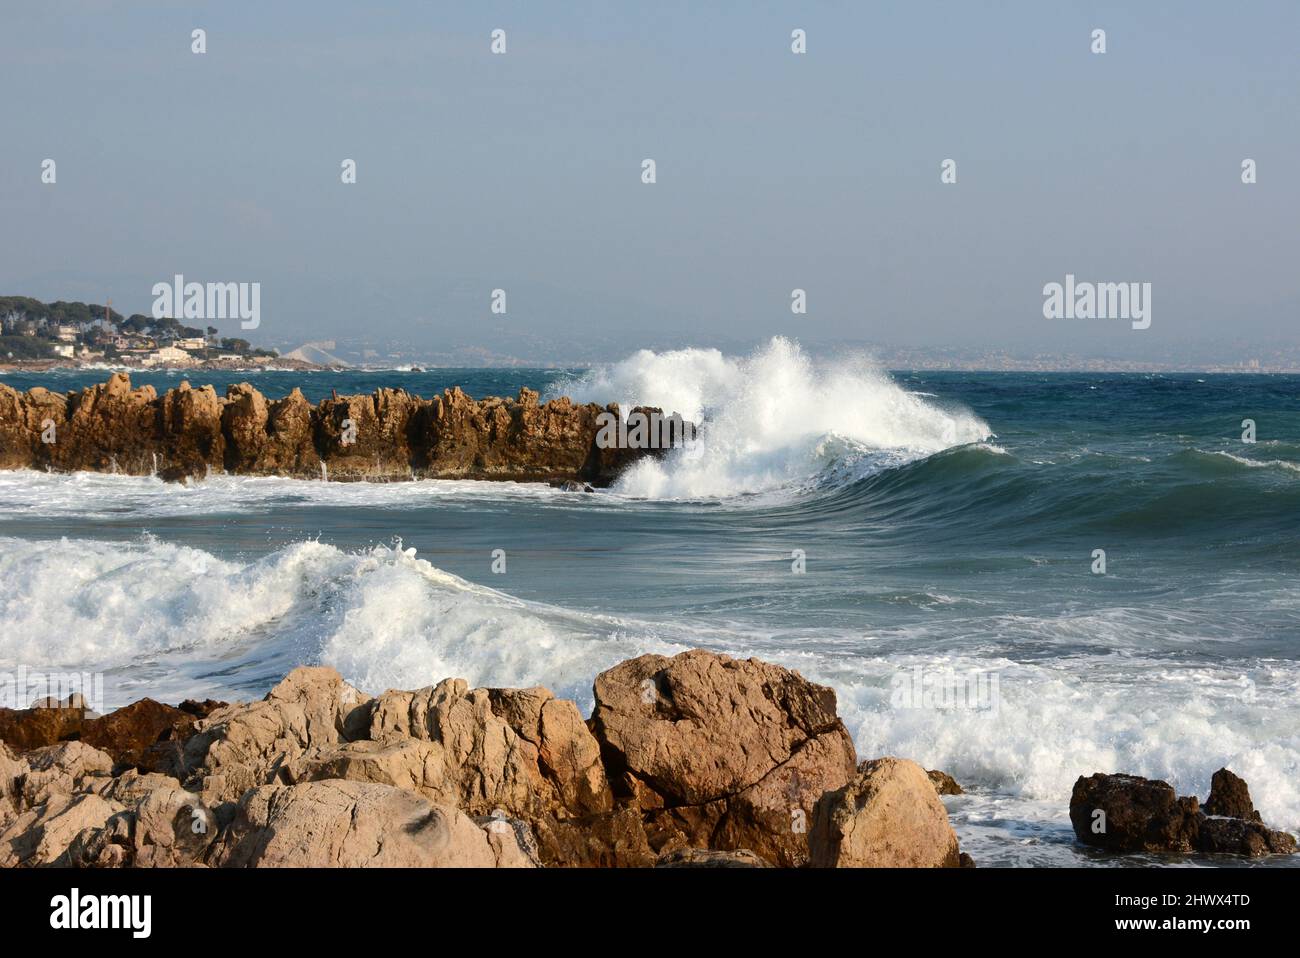 Francia, costa azzurra, Cap d'Antibes, la Garoupe, da un forte vento orientale onde potenti si infrangono sulle rocce. Foto Stock